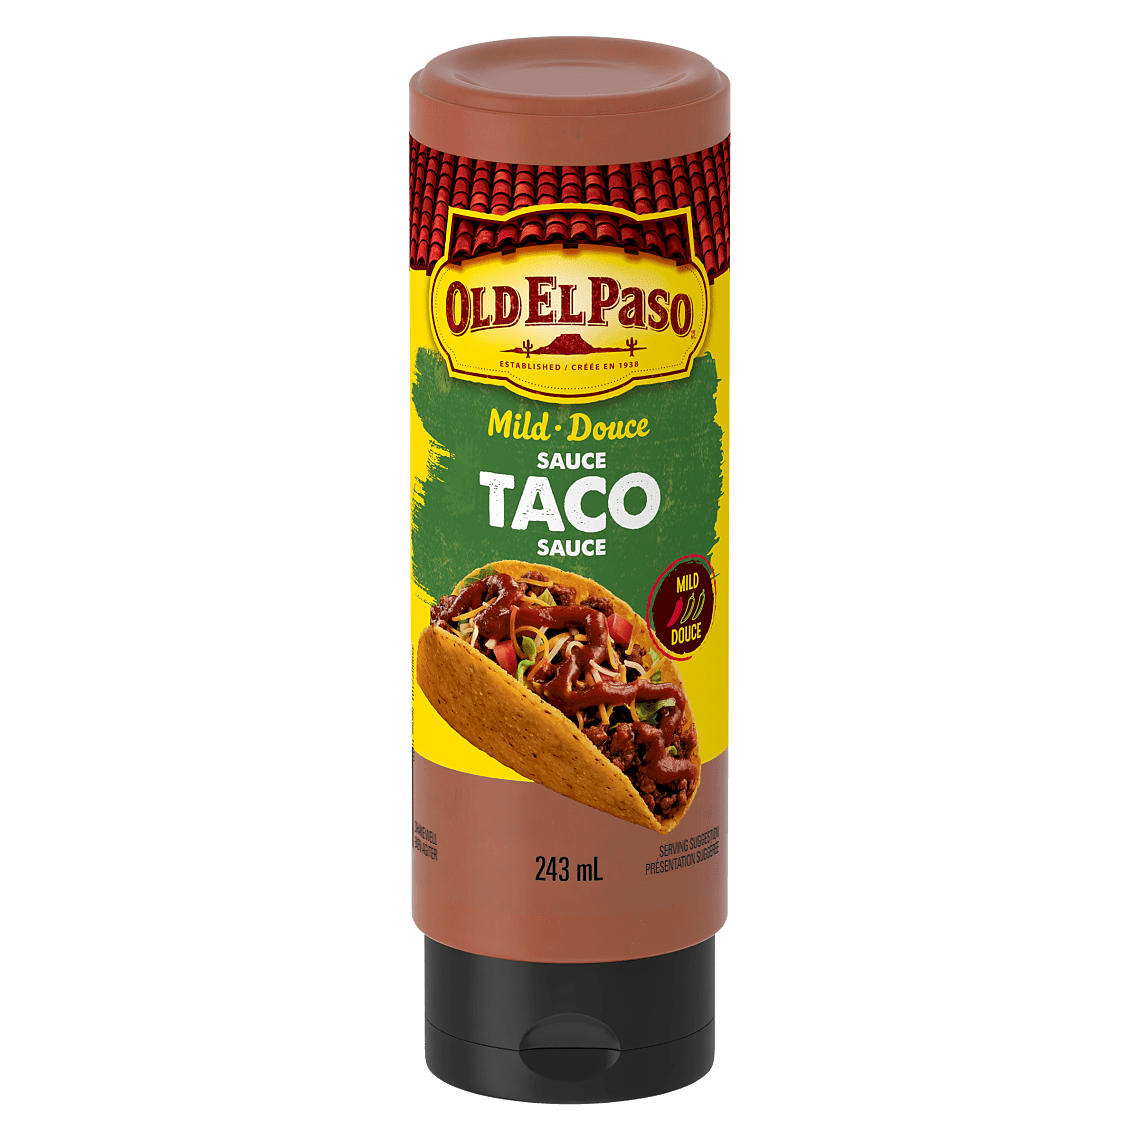 Taco Sauce - Mild